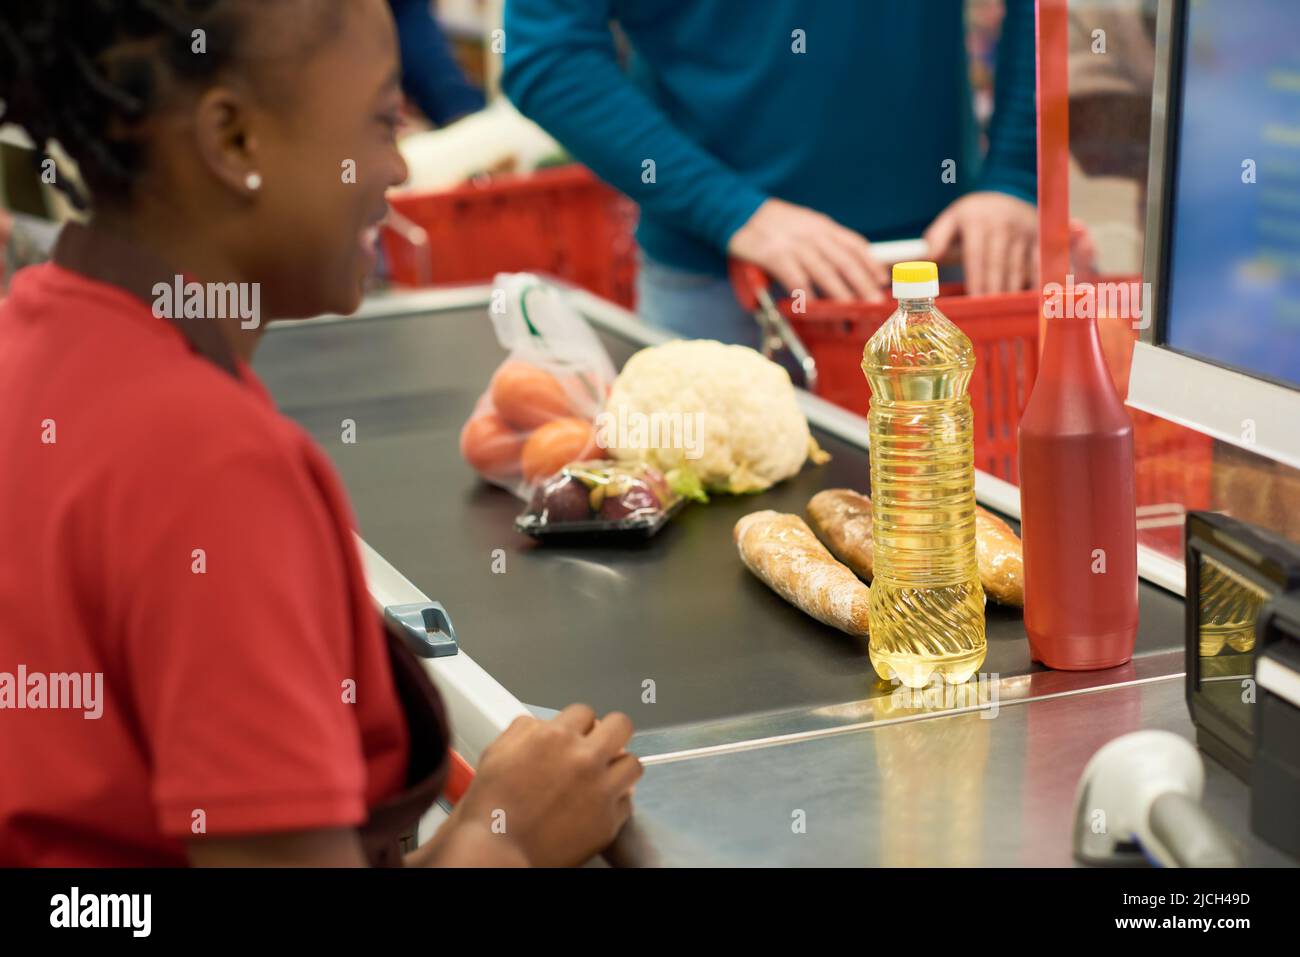 Ketchup, Sonnenblumenöl, Brot und andere frische Lebensmittel an der Kasse zwischen Verkäuferin in Uniform und Käufer mit Wagen Stockfoto